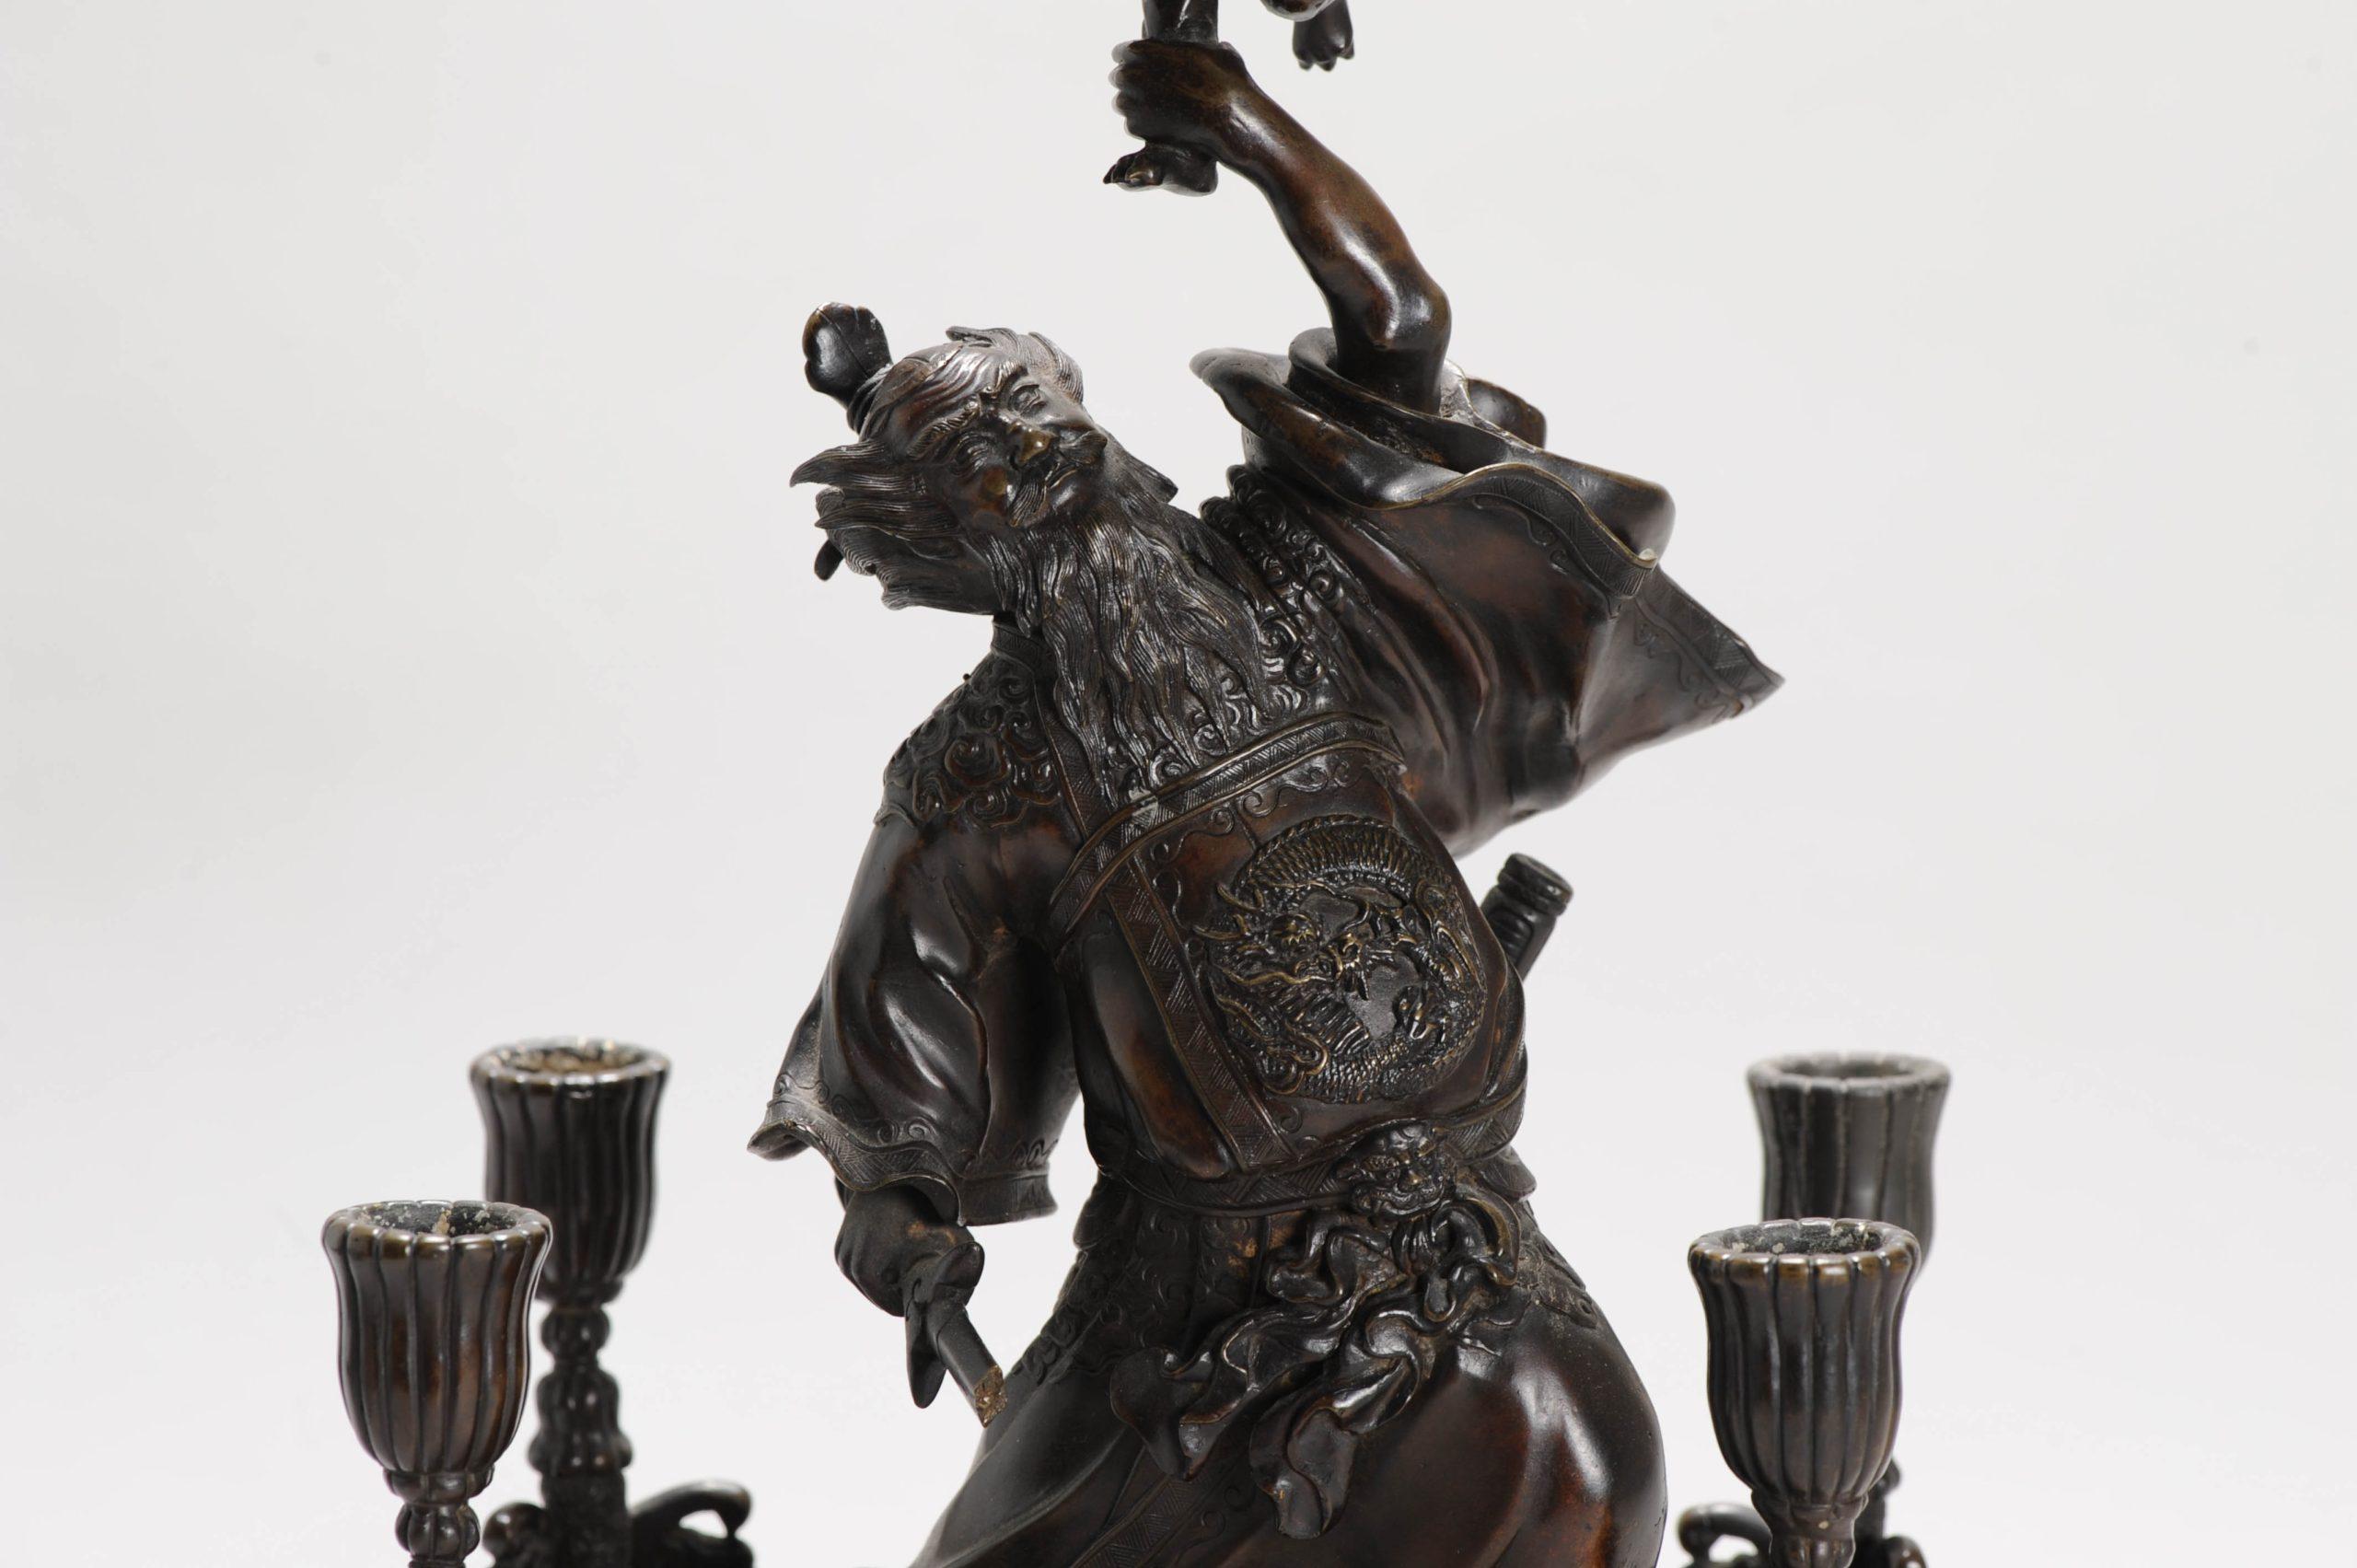 

Chinesische Statue/Kerzenhalter aus BRONZE auf höchstem Niveau. Darstellung von Zhongkui und Kind.

Zhong Kui ist nicht nur ein Bezwinger des Bösen, sondern hat auch die Macht, Glück zu bringen. Er wird mit glücksverheißenden Symbolen der